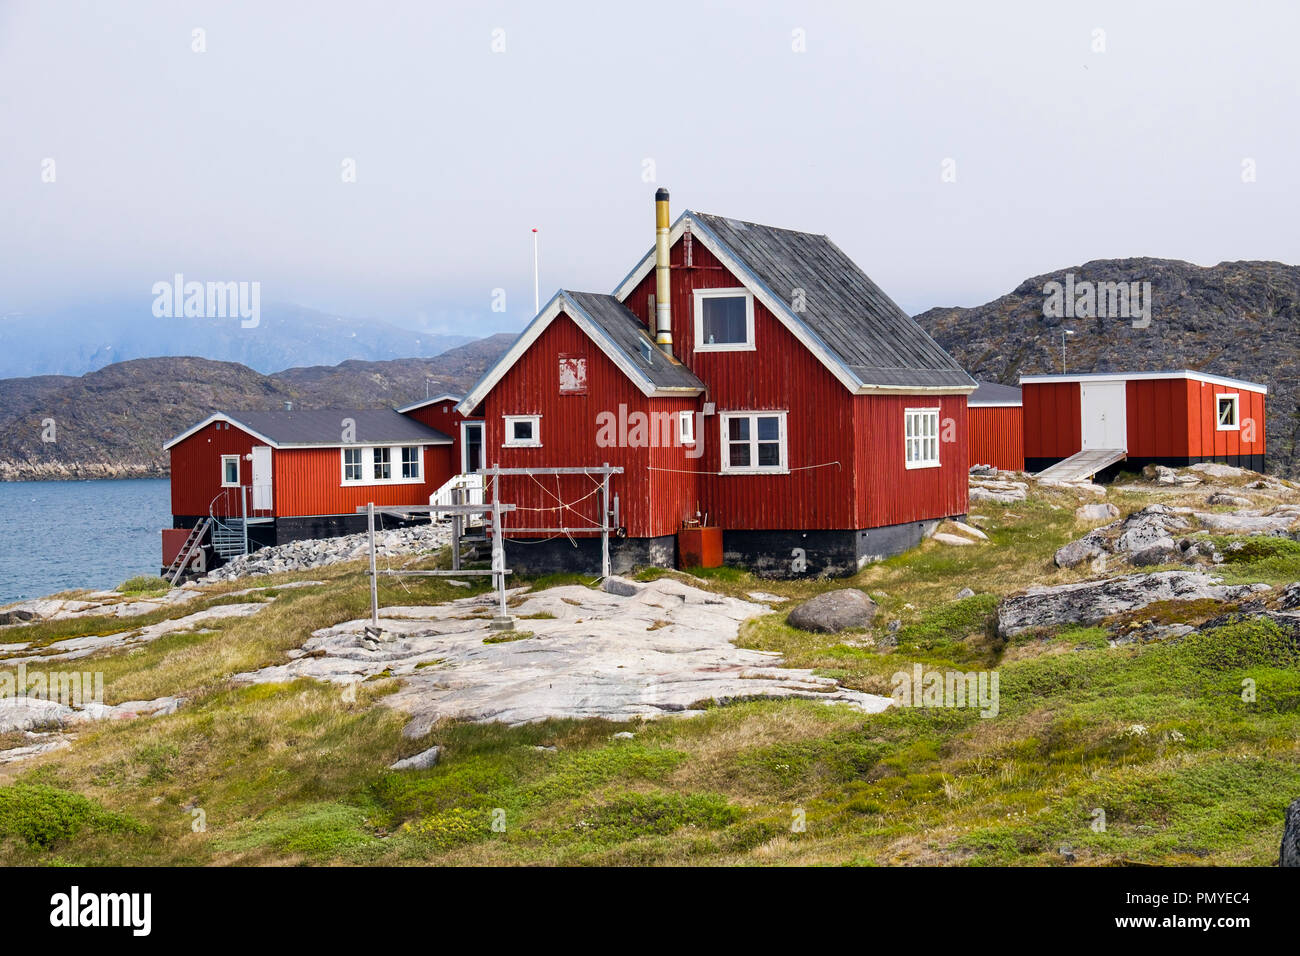 Typische Inuit Dorf Holzhäuser rot lackiert auf Meer. Itilleq, Qeqqata, Grönland. Auf einer kleinen Insel 2 km nördlich des Polarkreises Stockfoto